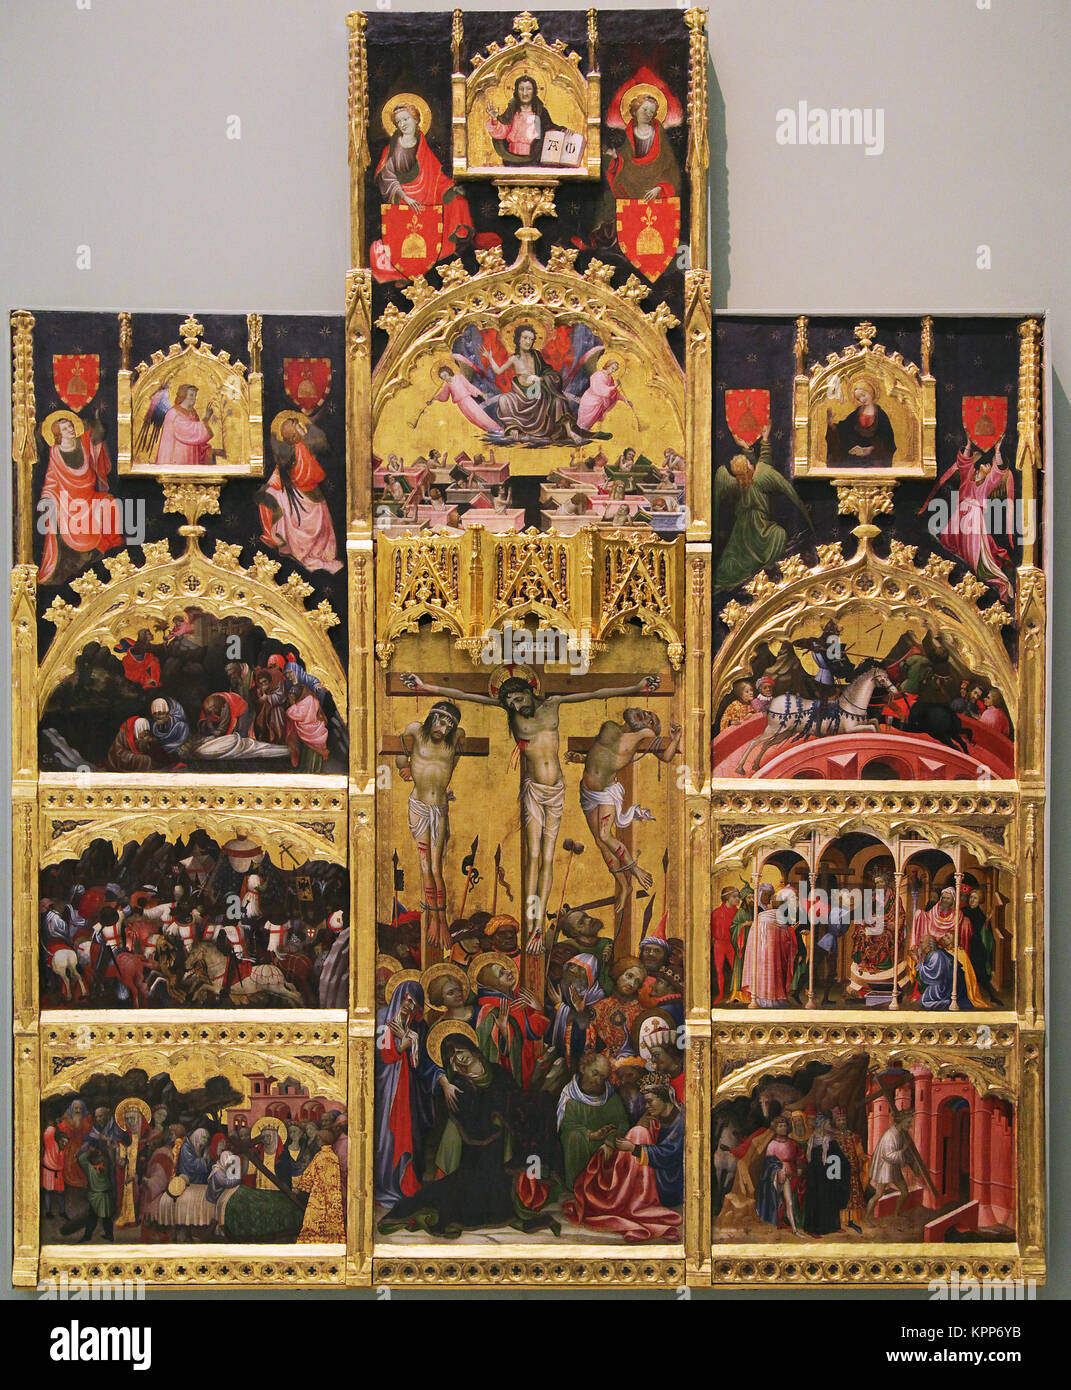 Altarbild des Heiligen Kreuzes von Miquel Alcanyís Valencianer Maler der Gotik. Aktiv 1407 - 1447 Stockfoto